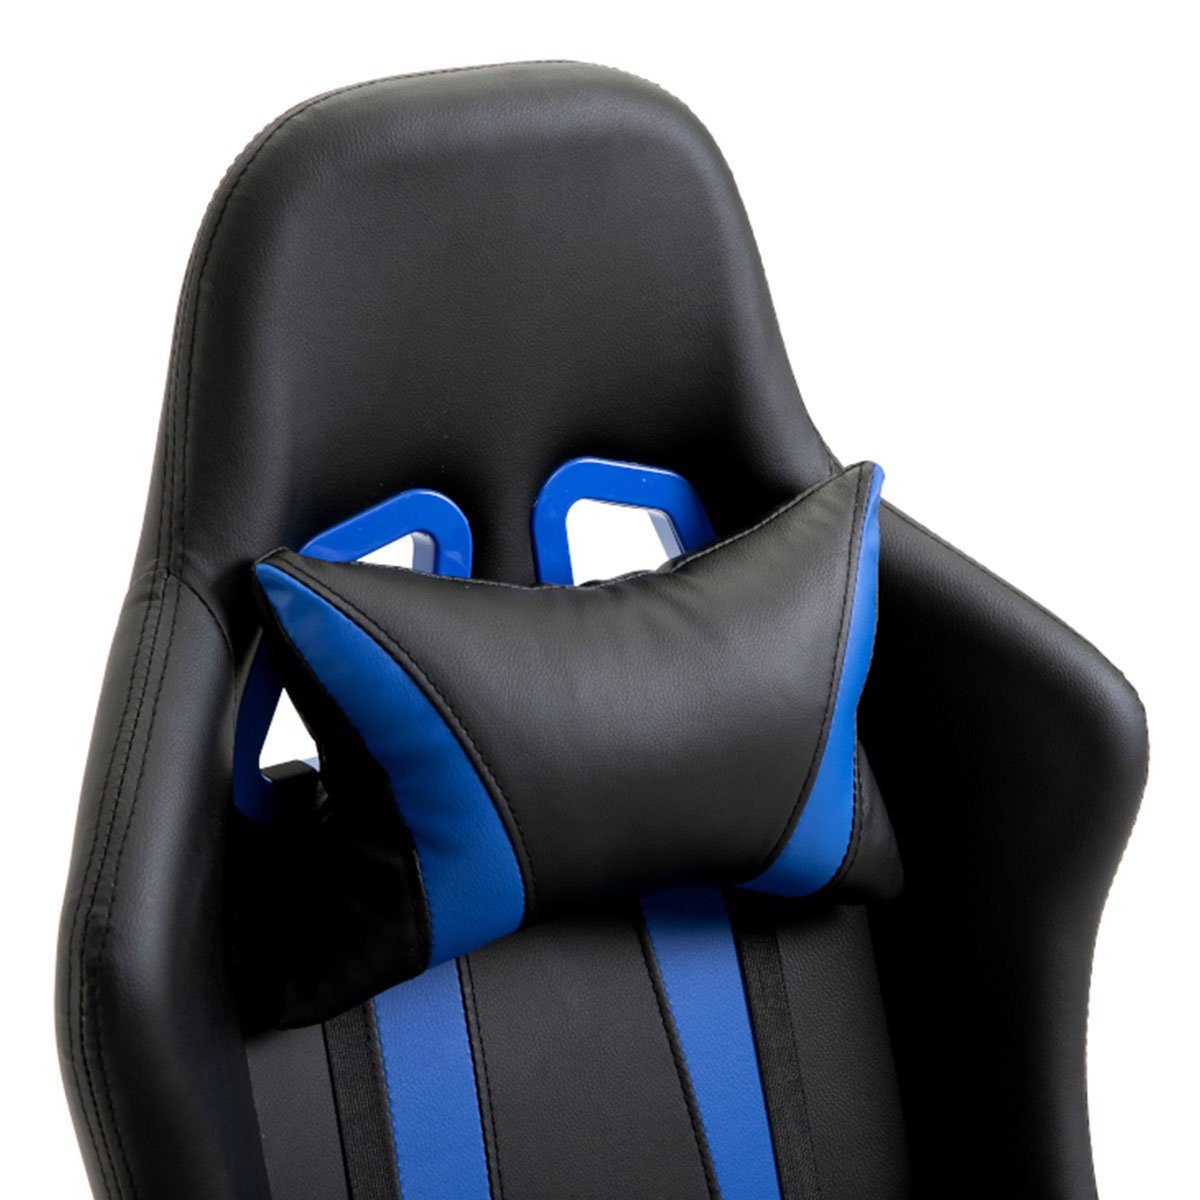 Fußablage, mit blauen mit Chair SVITA verstellbare ausziehbare Gaming St), & (1 GAMYX Streifen Streifen Schwarz blauen | Armlehnen, Schwarz Nackenkissen Lenden-